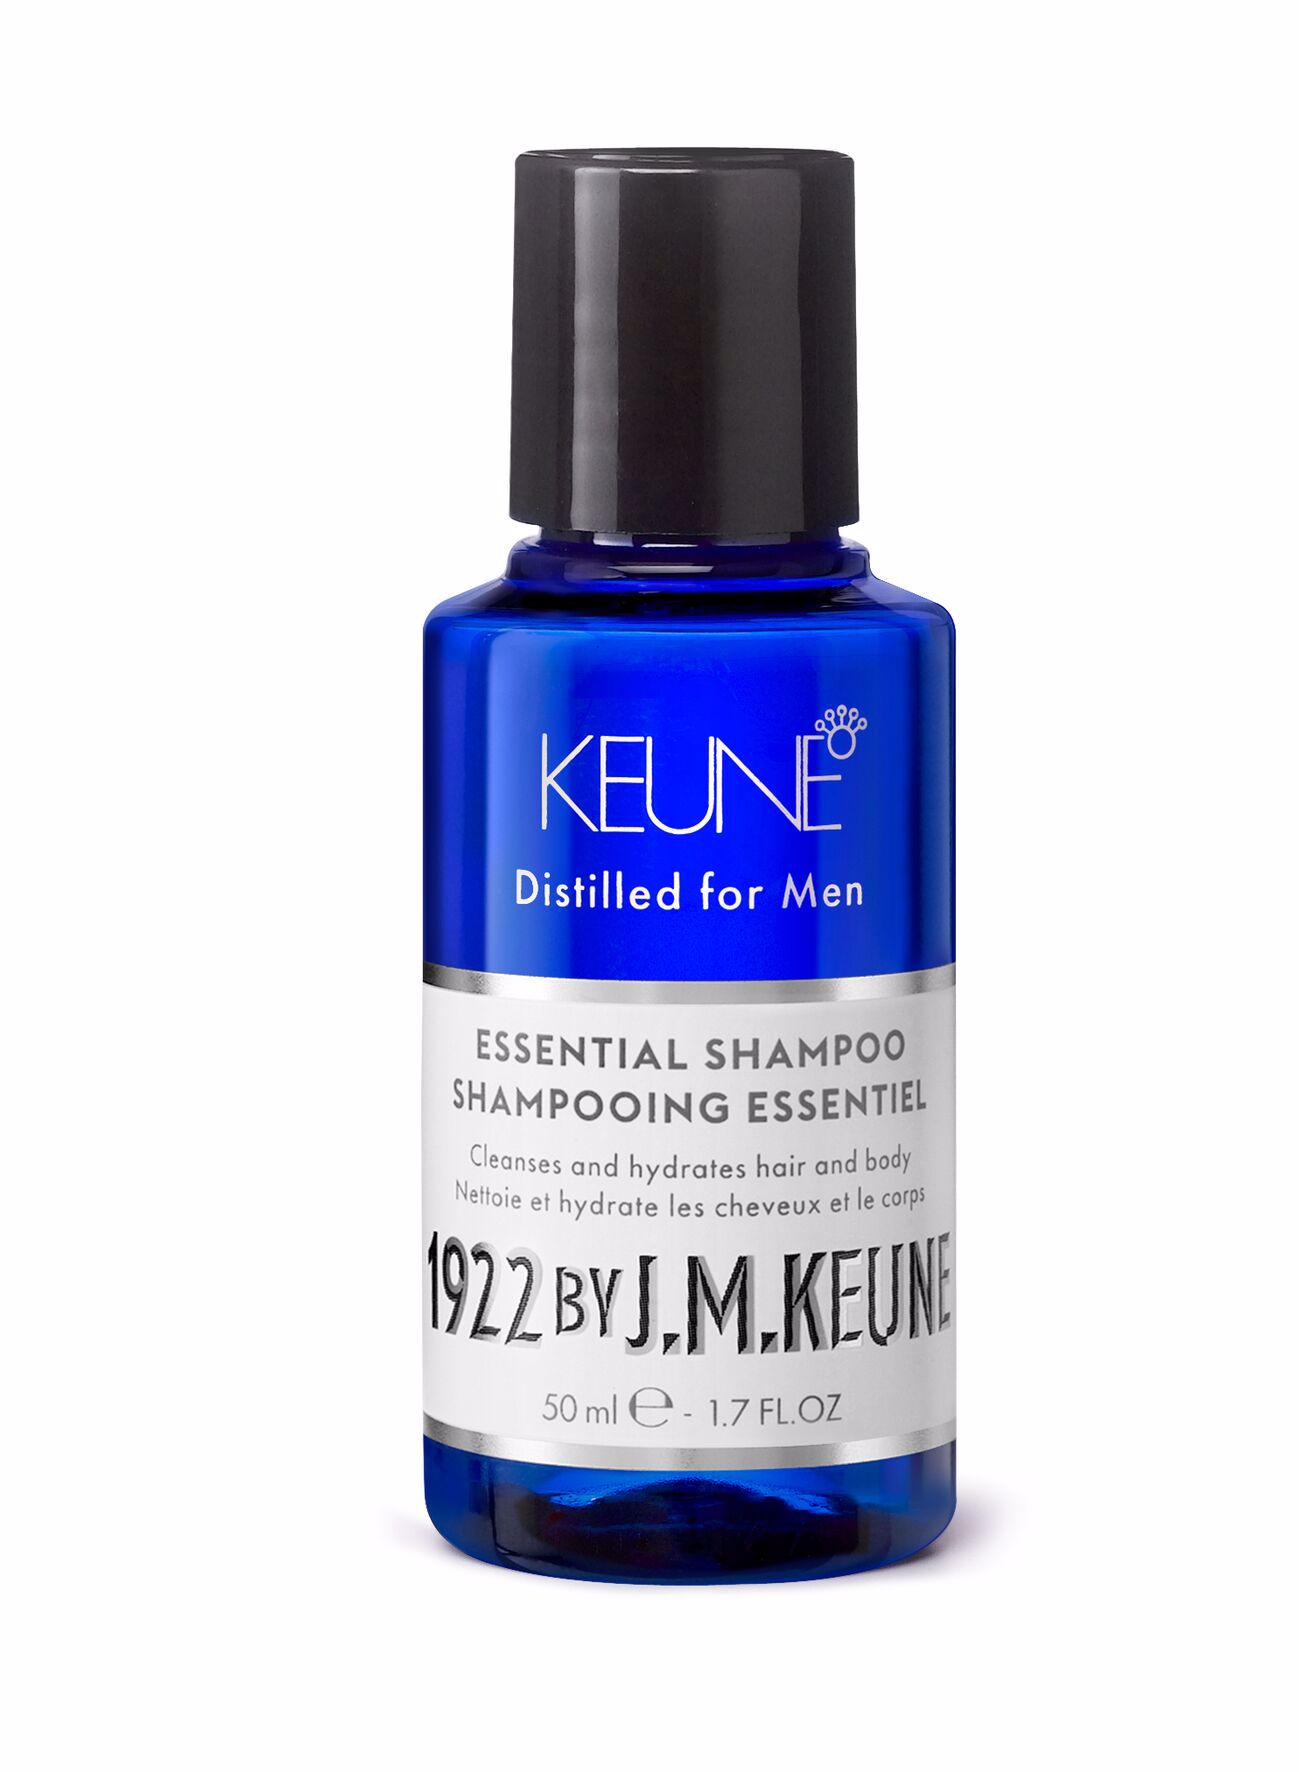 Das Essential Shampoo für Männer reinigt Haar, Bart und Körper gründlich. Kreatin und Bambusextrakt stärken und verleihen Volumen. Jetzt auf keune.ch erhältlich.